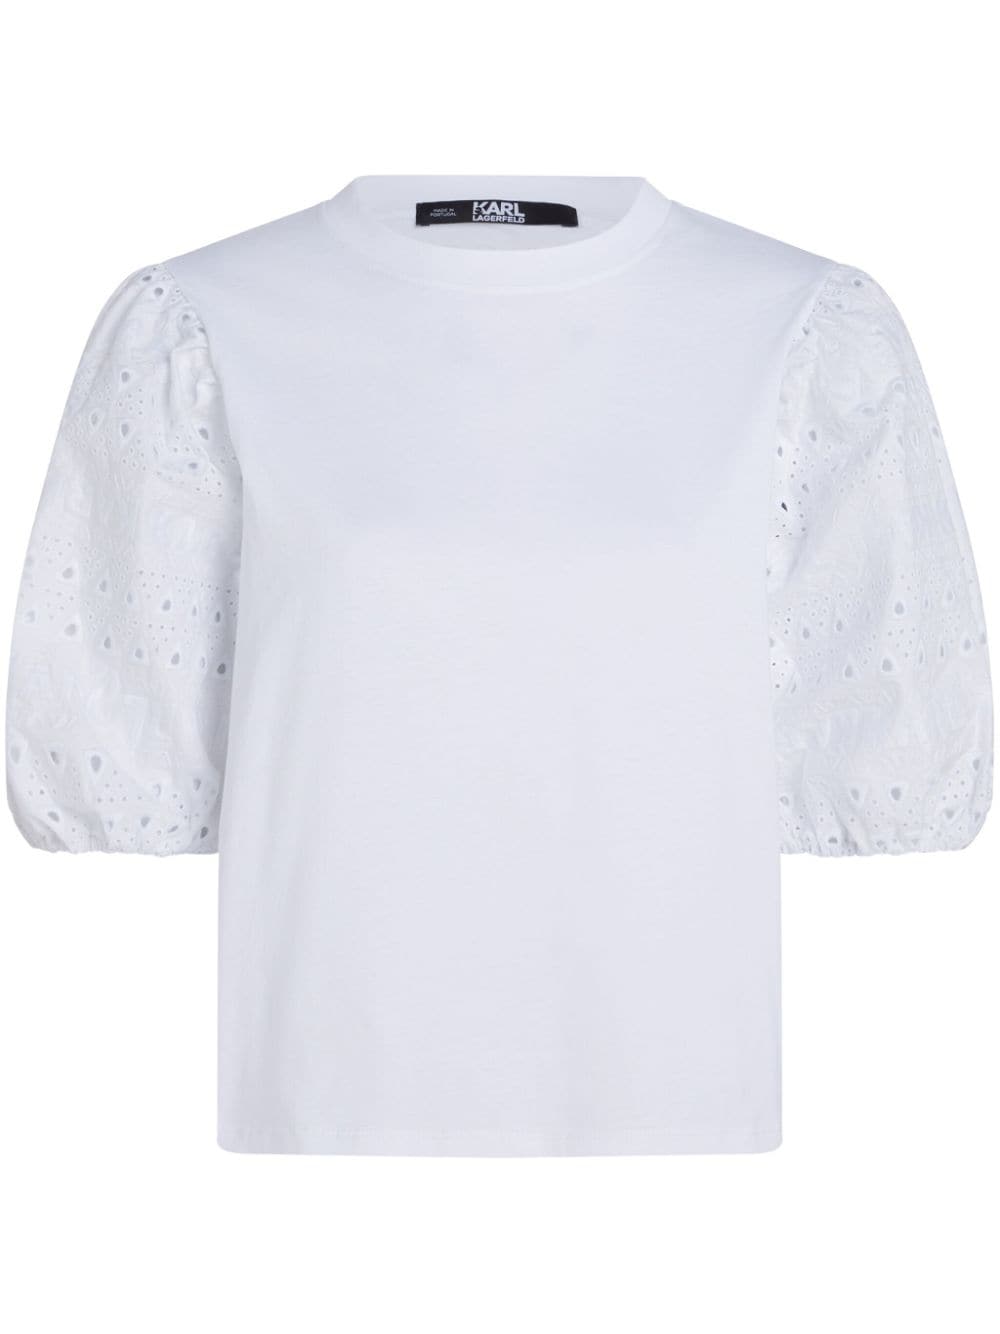 Karl Lagerfeld broderie-anglaise cotton T-shirt - White von Karl Lagerfeld